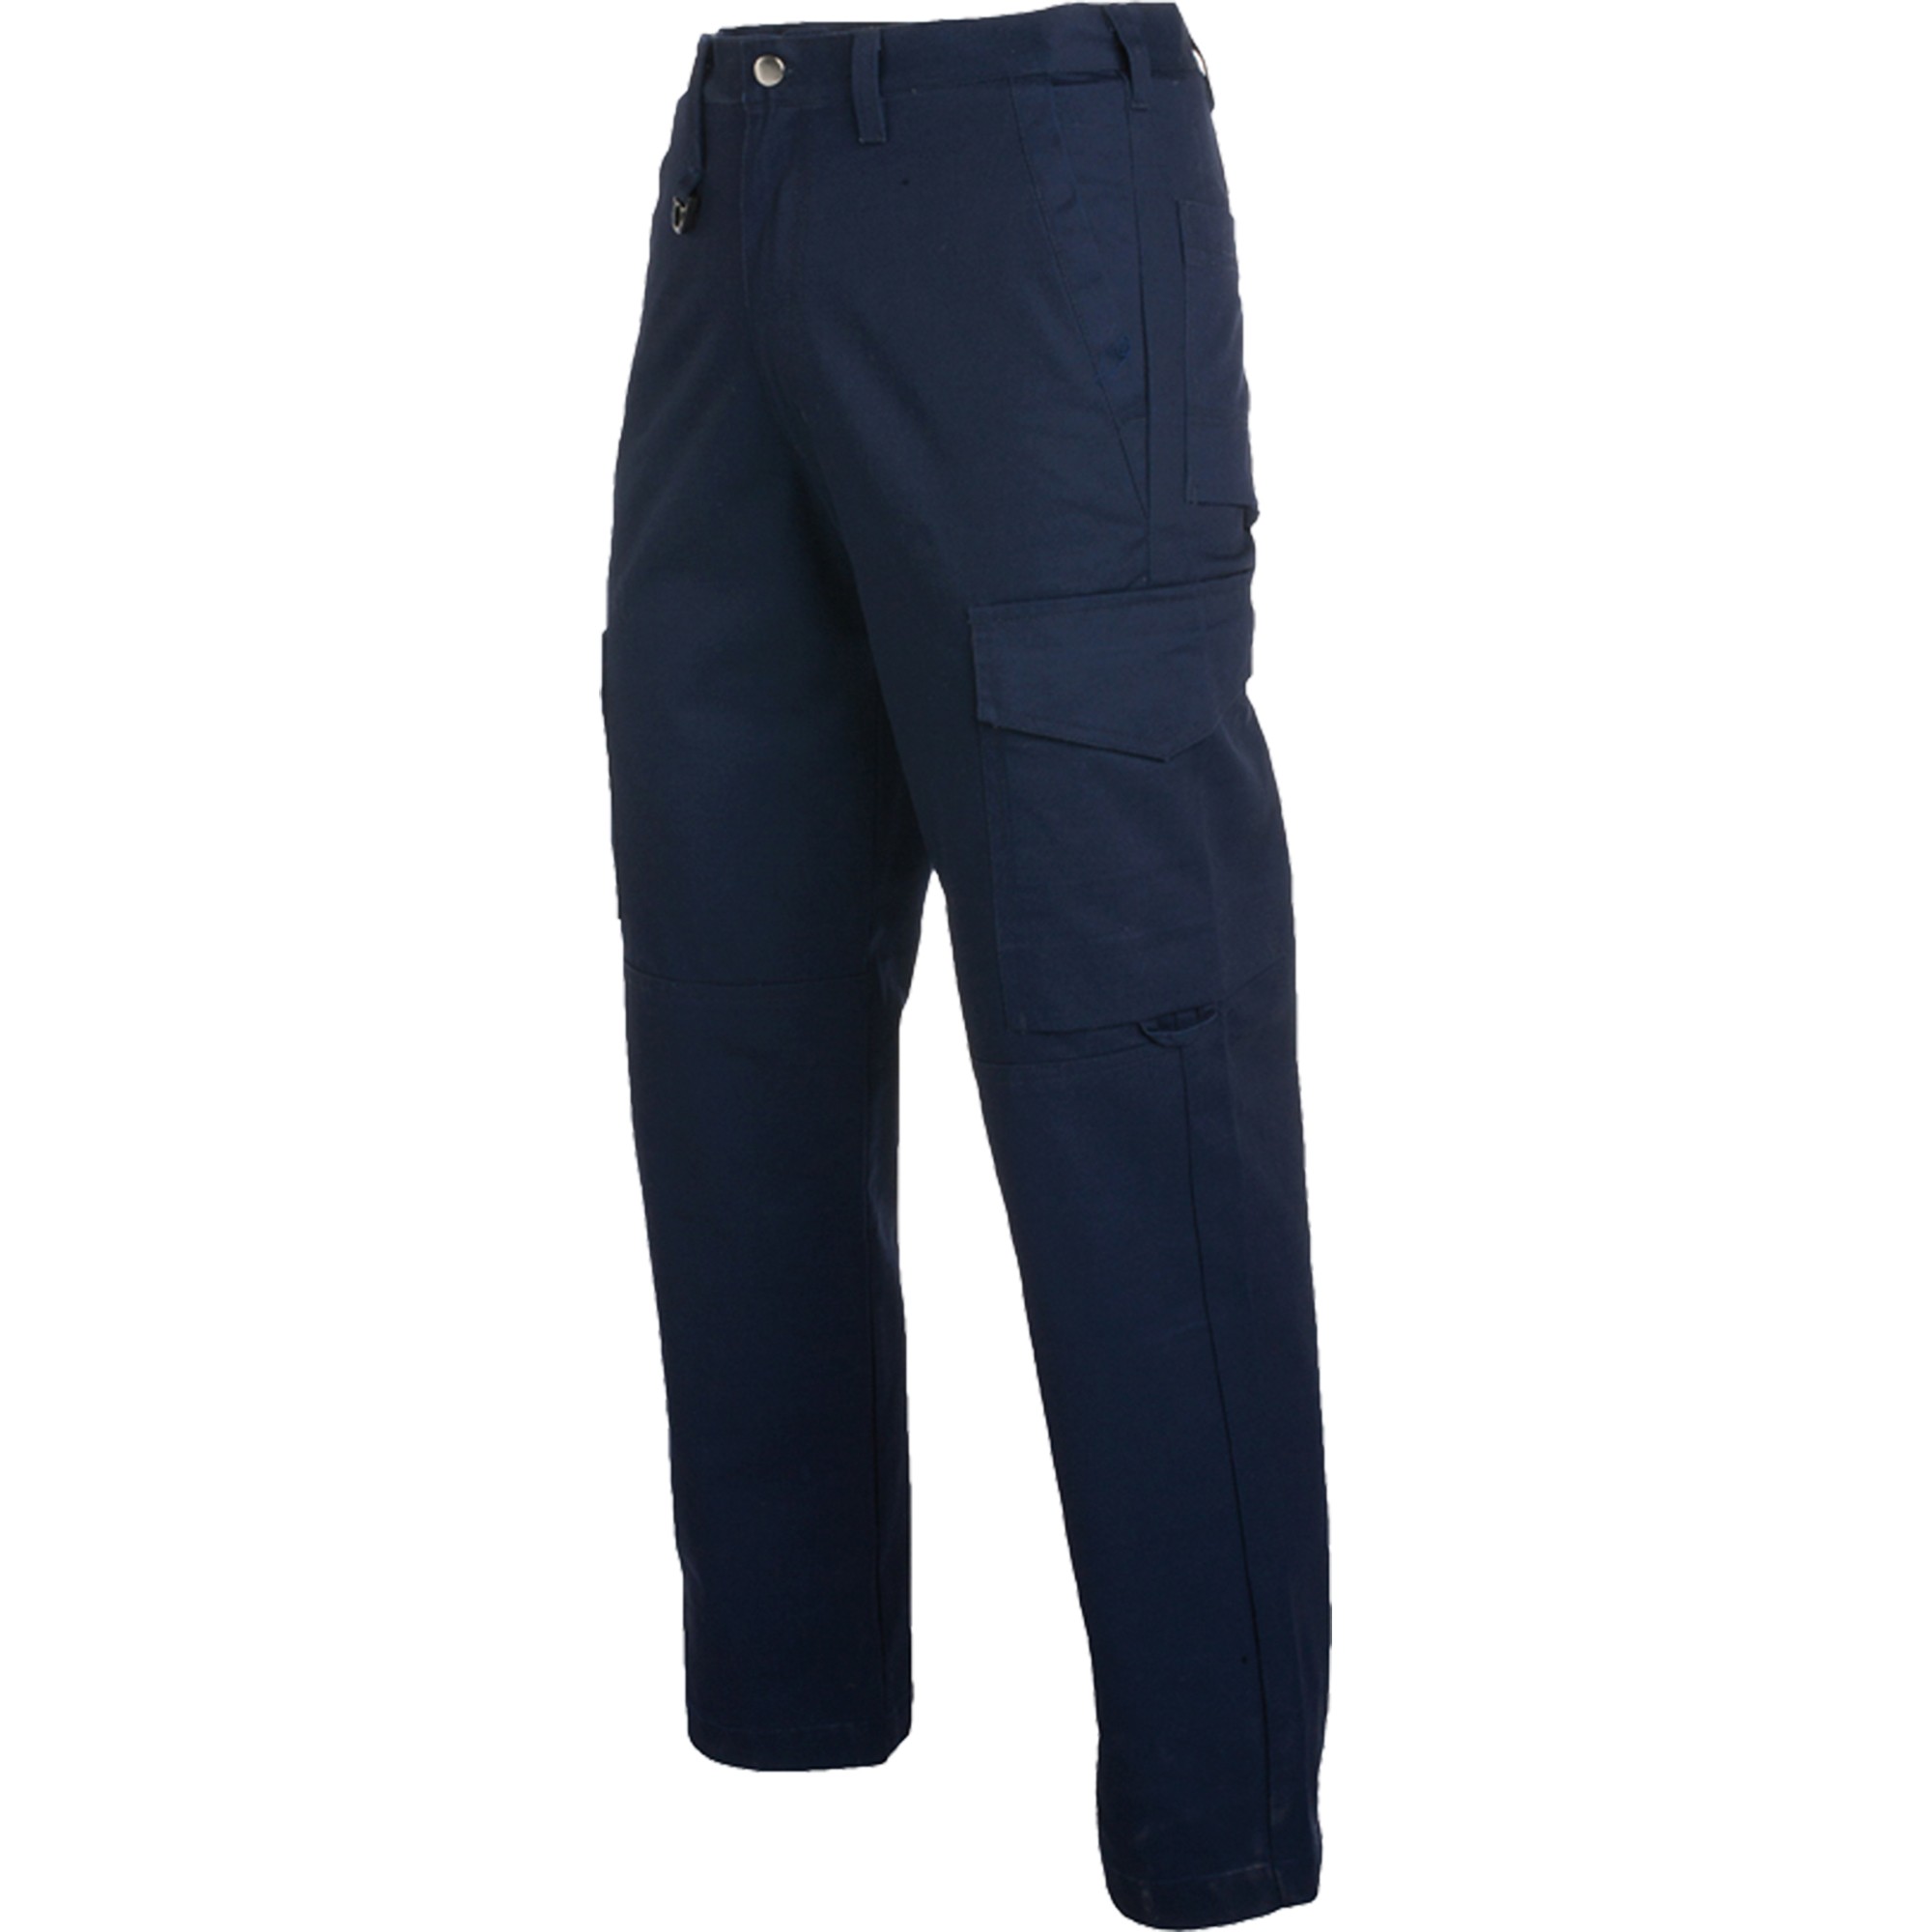 Pantalón de trabajo ROLY 9108 Protect, compra online